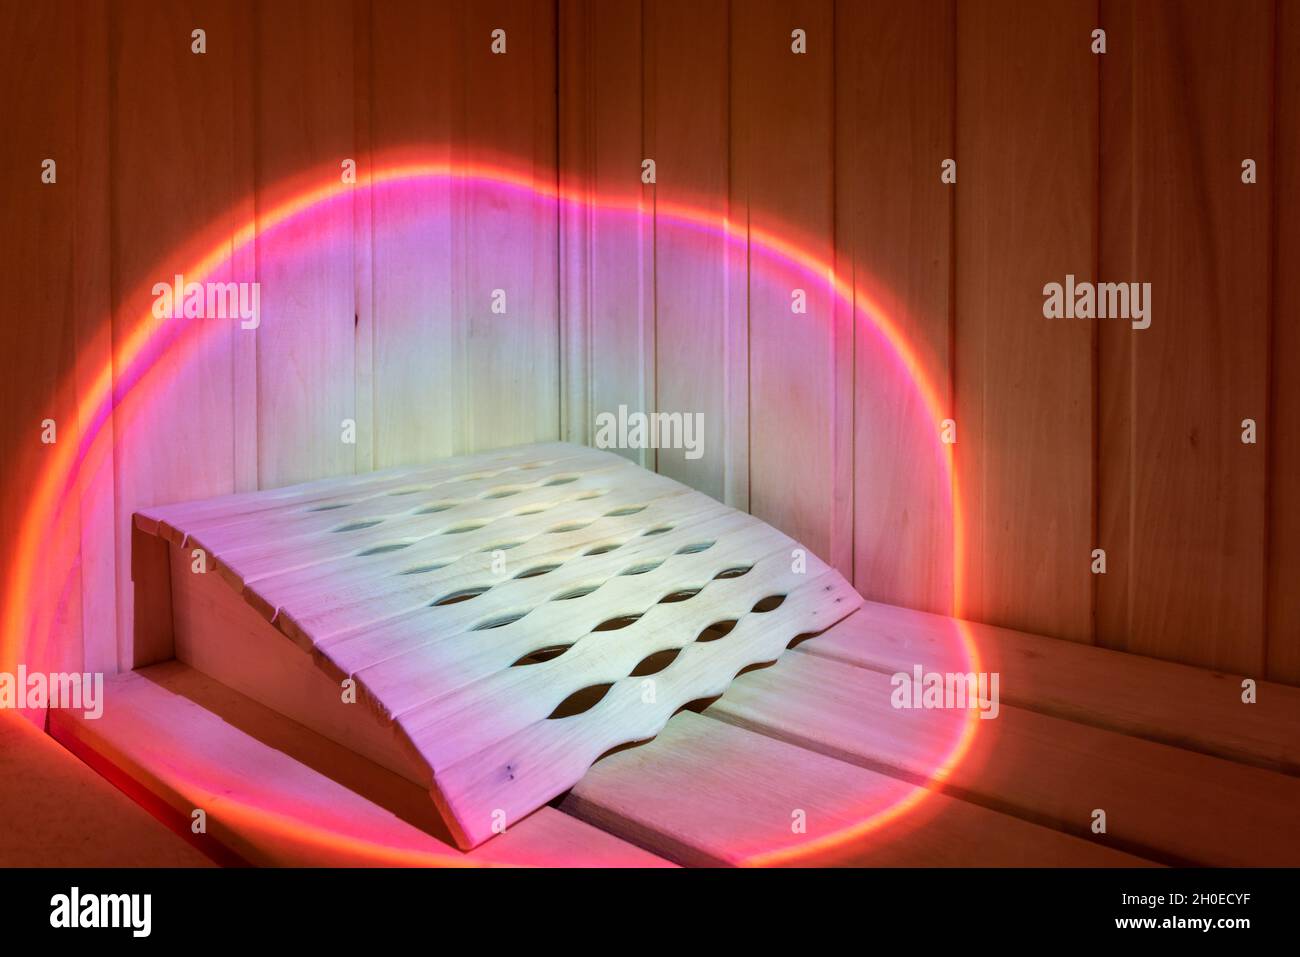 Il fascio luminoso di luce rosa illumina la panca in legno della sauna Foto Stock